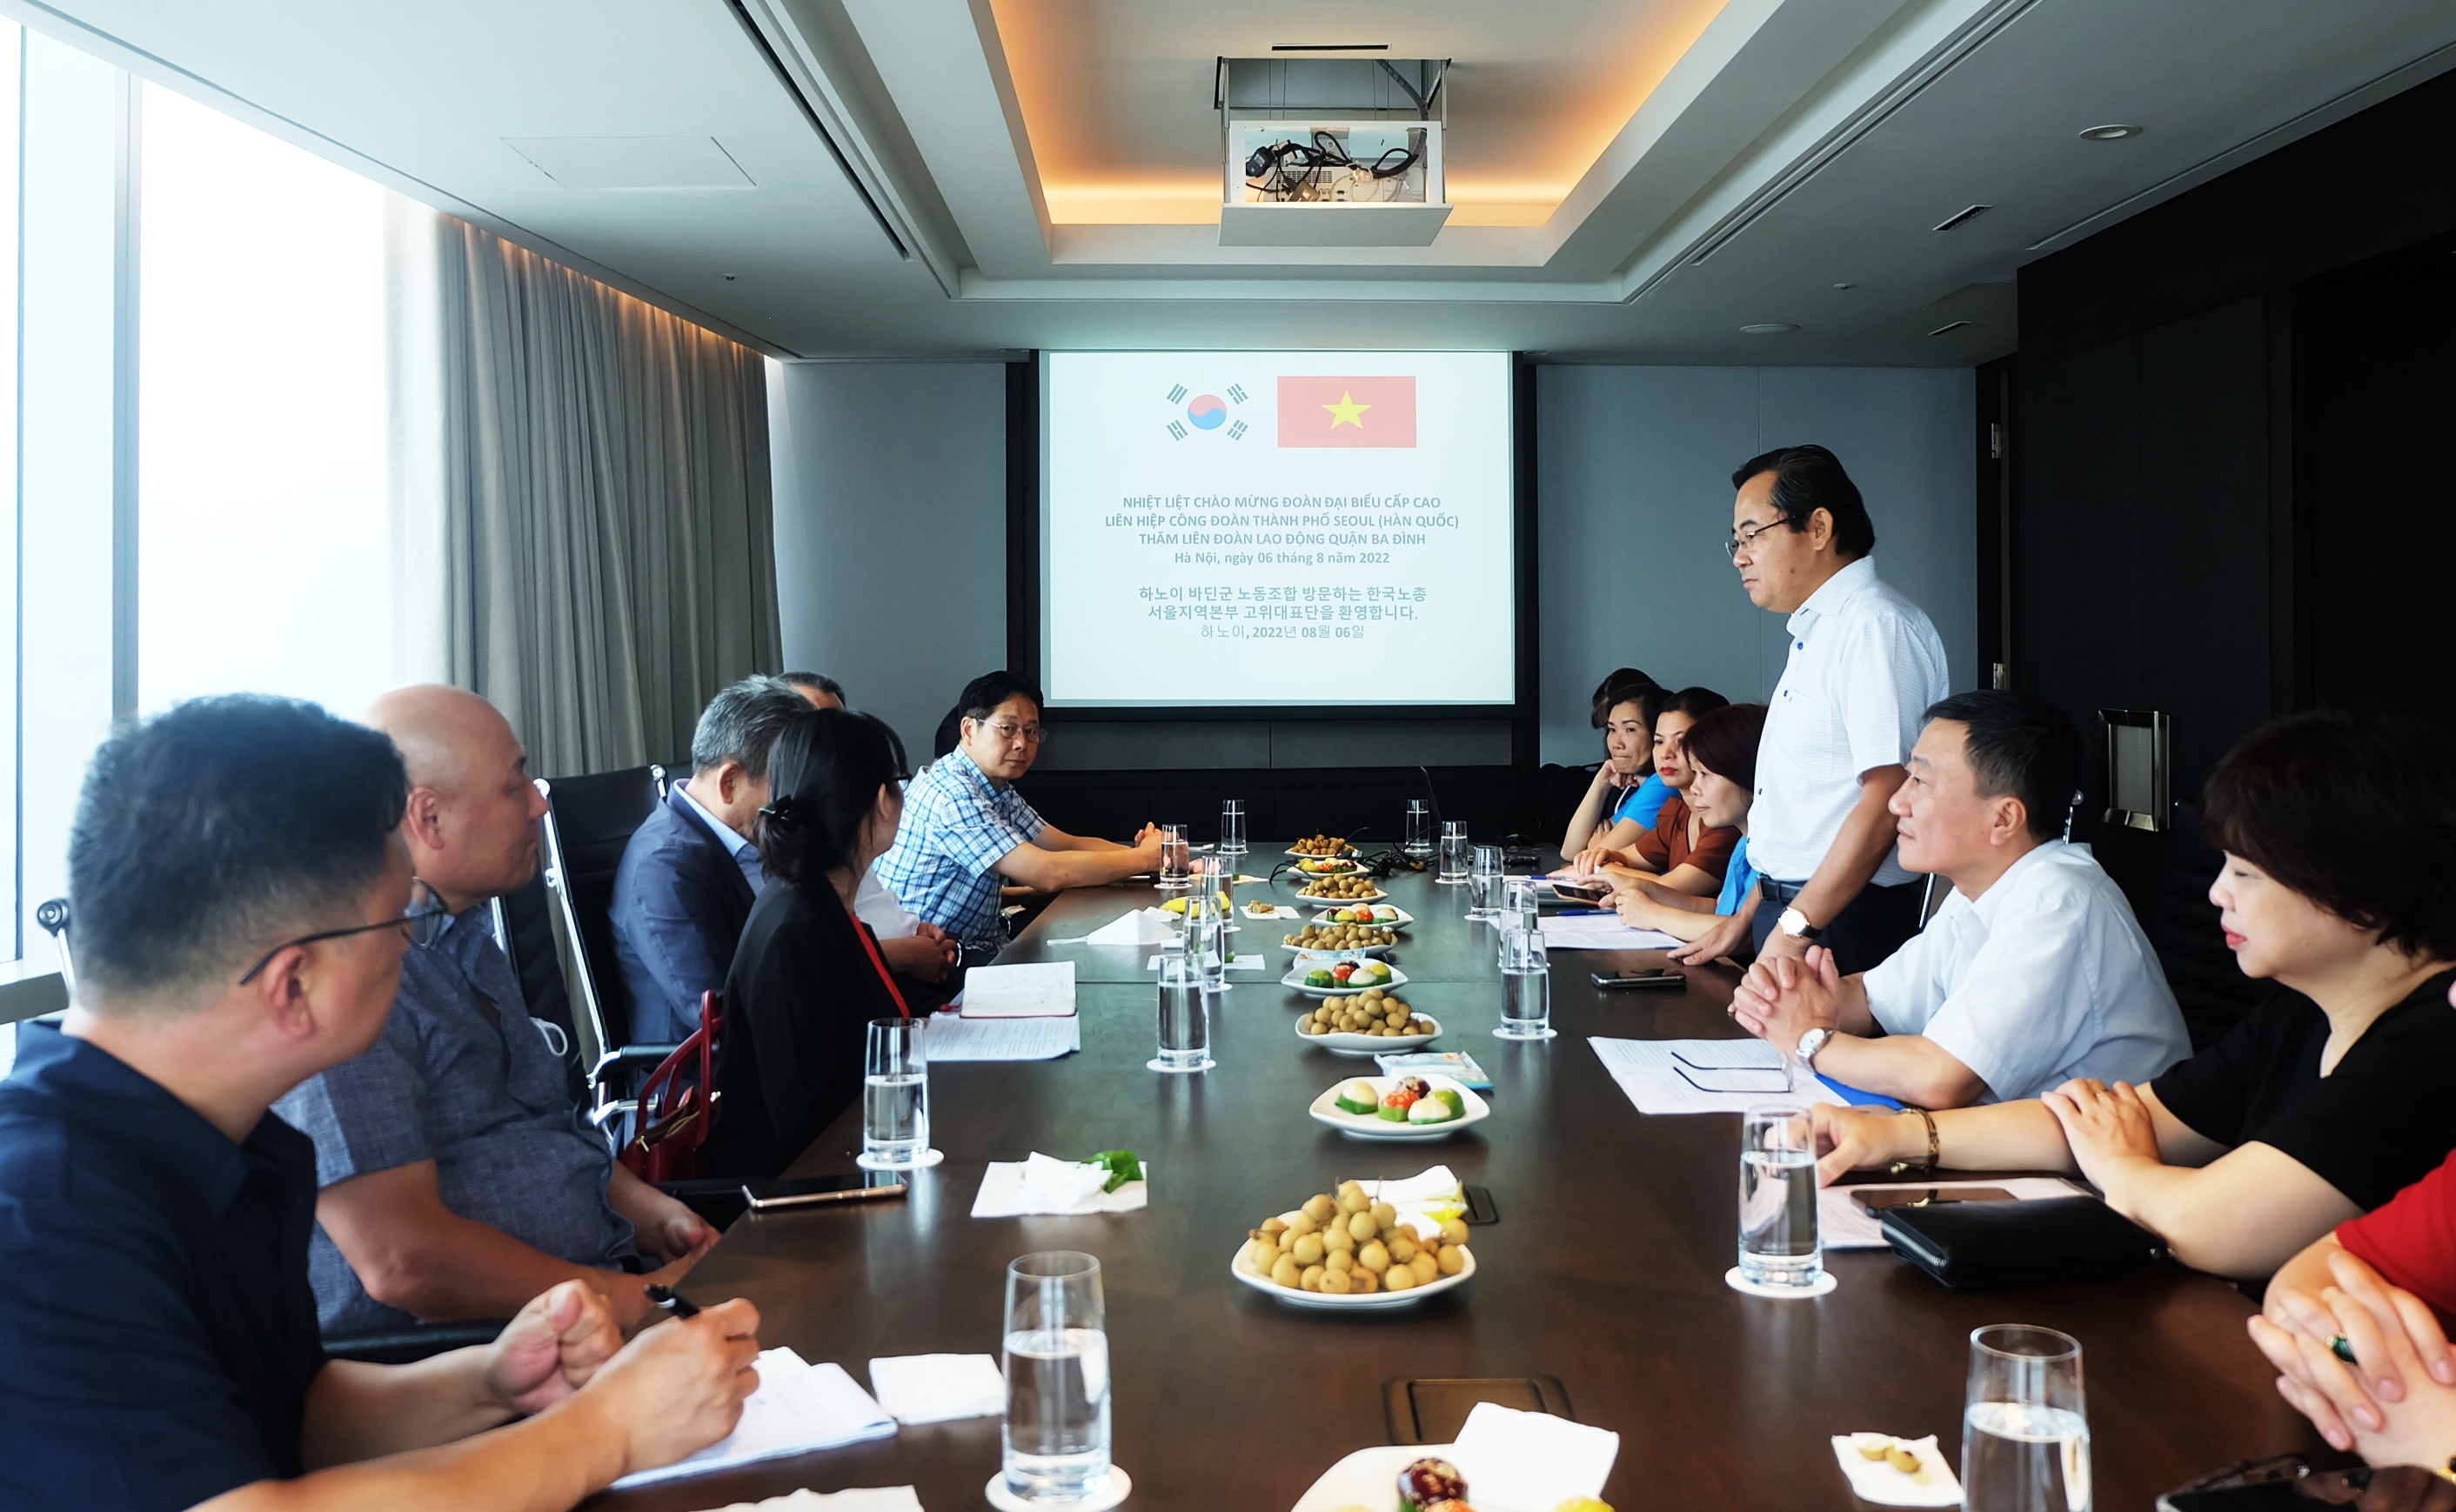 Đoàn đại biểu cấp cao Liên hiệp Công đoàn thành phố Seoul thăm, làm việc với LĐLĐ quận Ba Đình